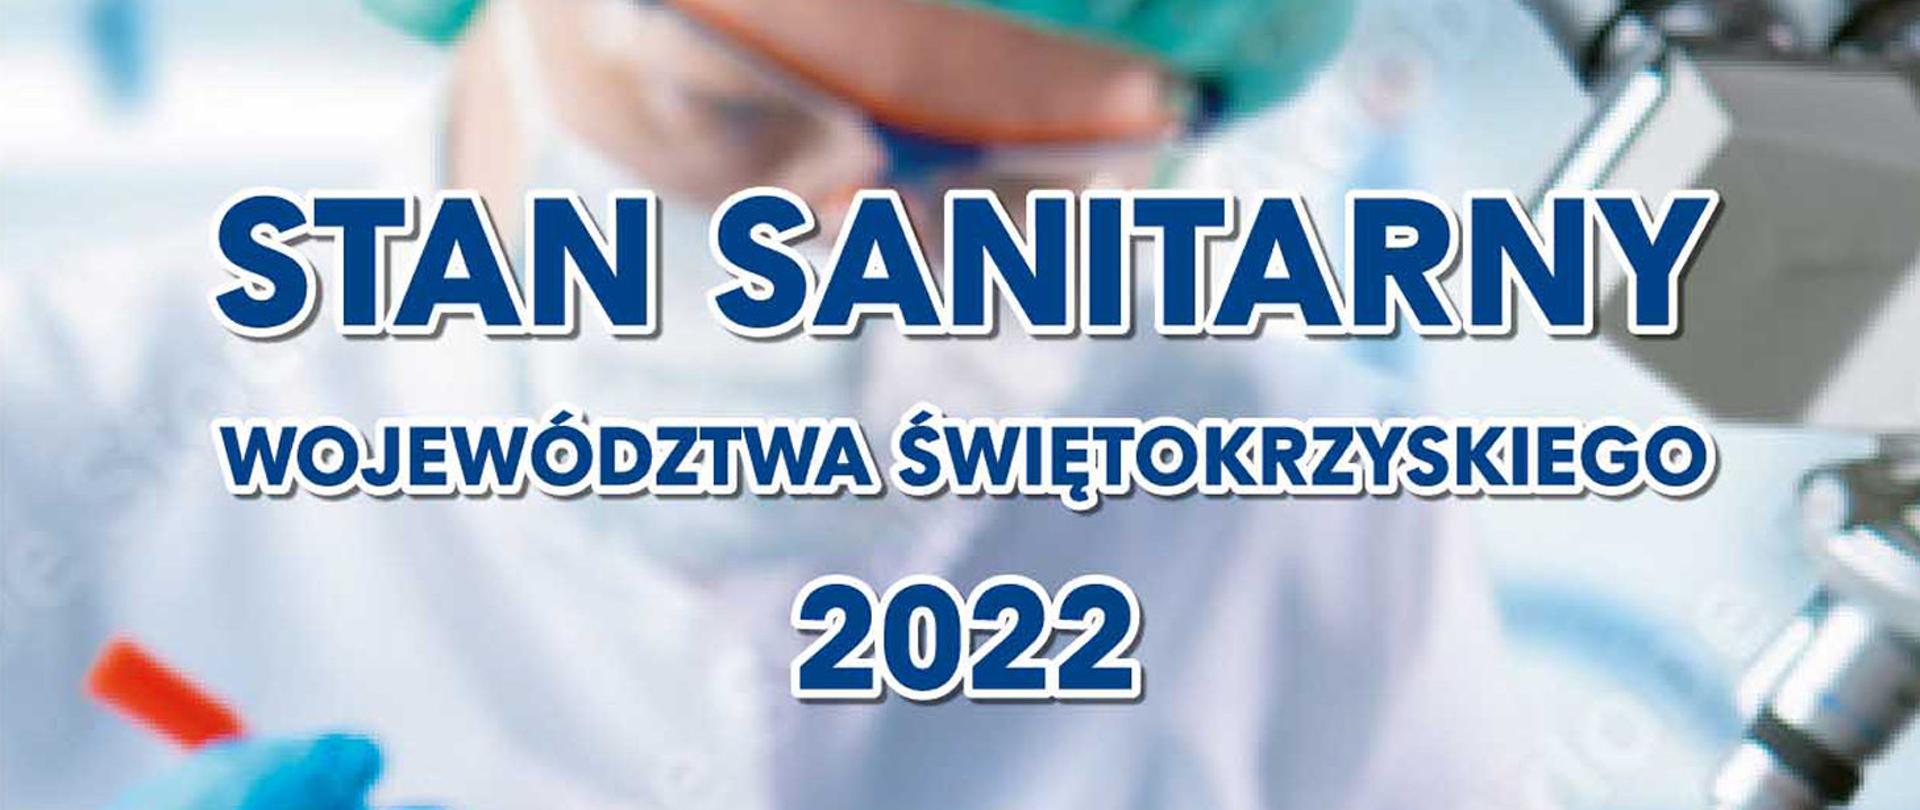 STAN SANITARNY województwa świętokrzyskiego 2021